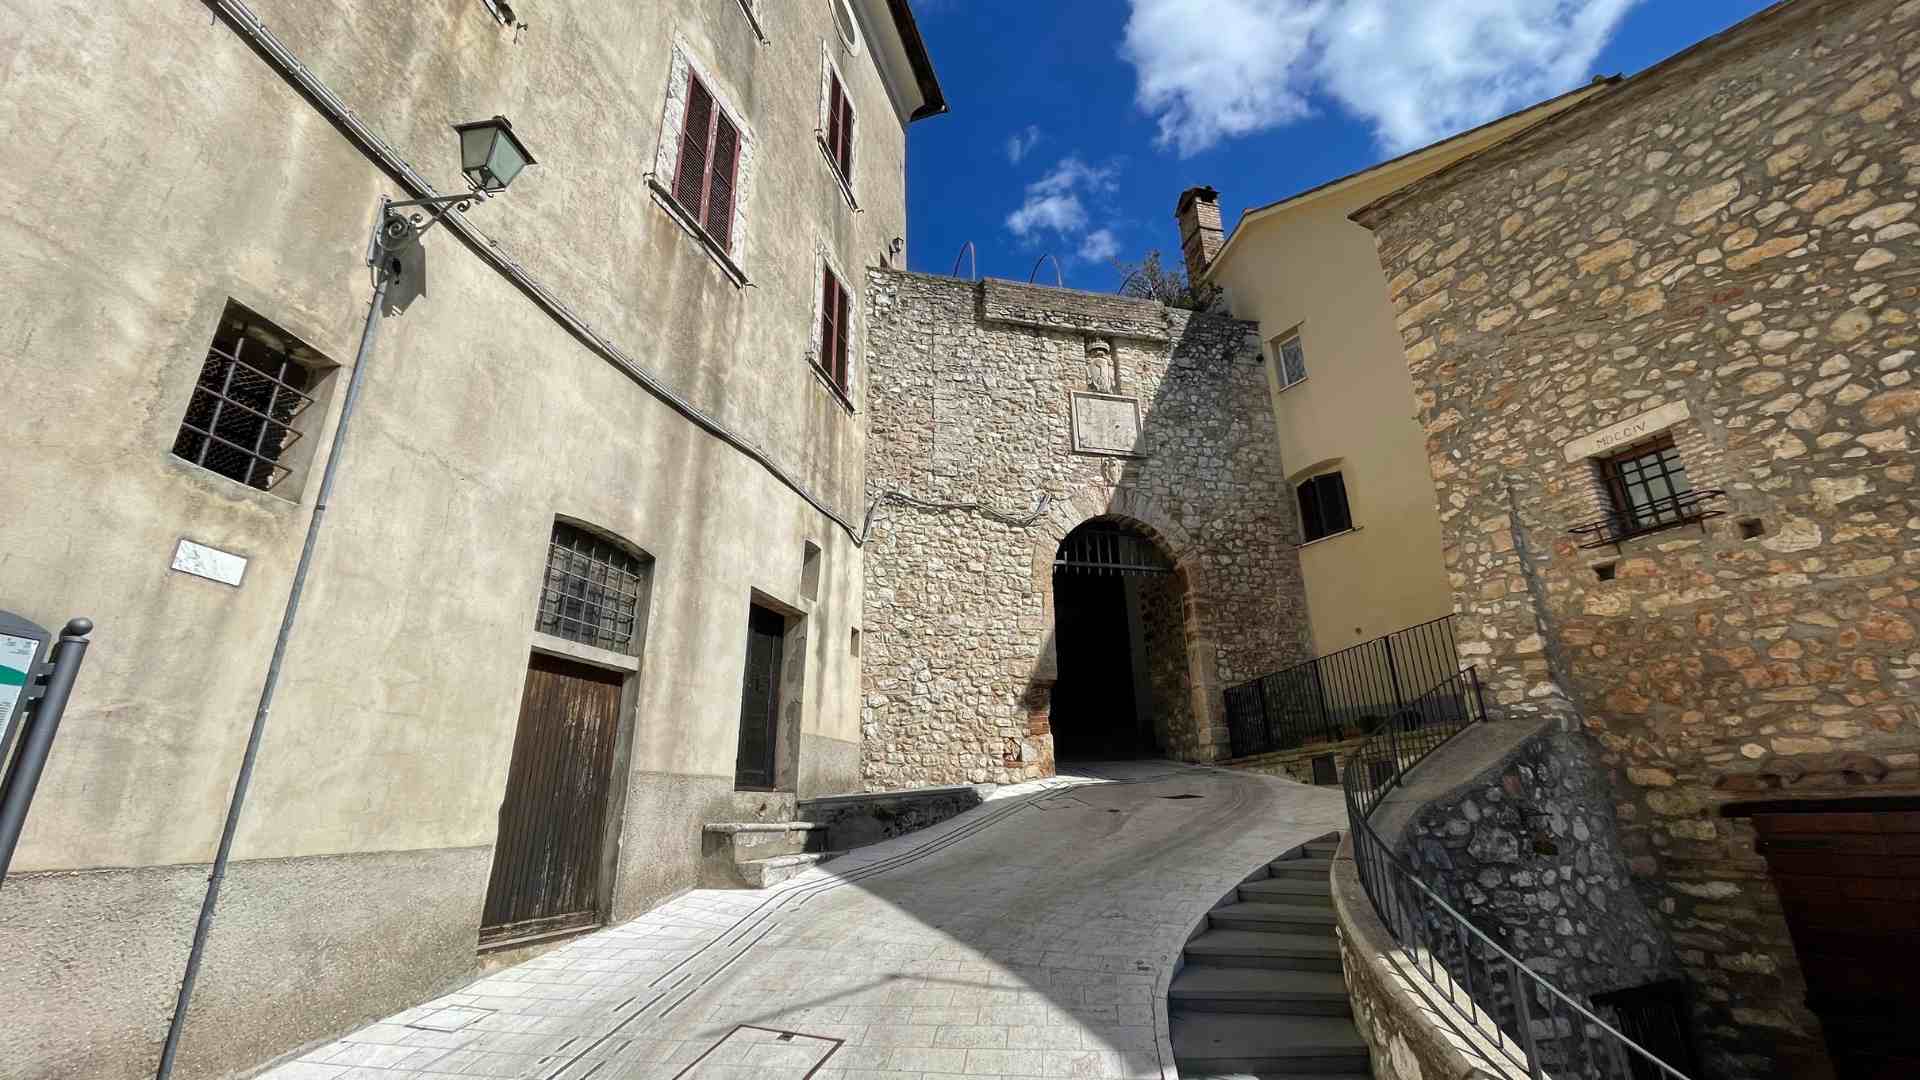 Ingresso basso al borgo e castello di Portaria